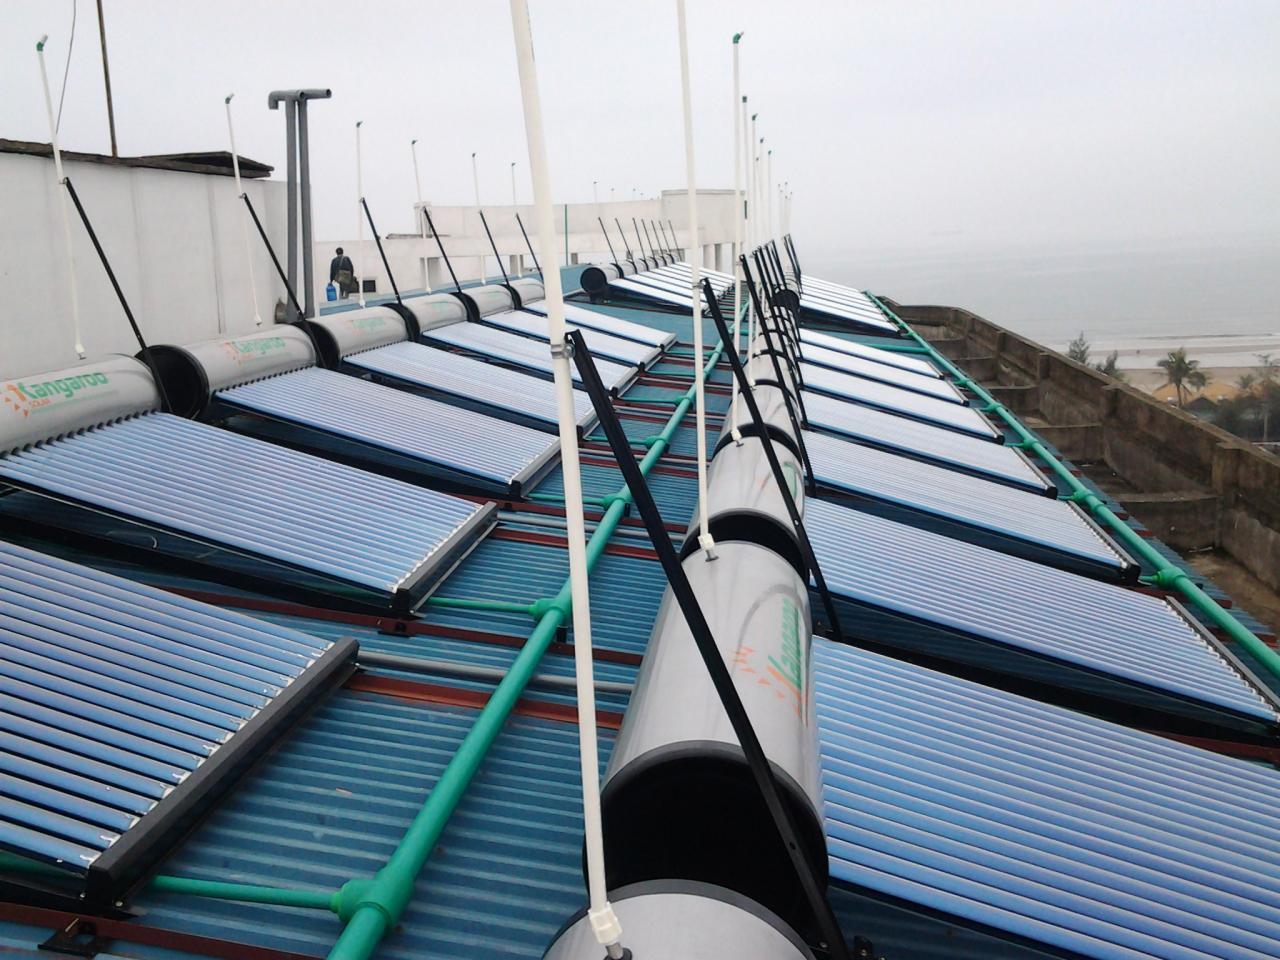 Máy nước nóng năng lượng mặt trời Kangaroo sử dụng công nghệ mạ và tráng bạc trên bề mặt thép, có độ bền cao ngay cả trong điều kiện khí hậu gần vùng biển